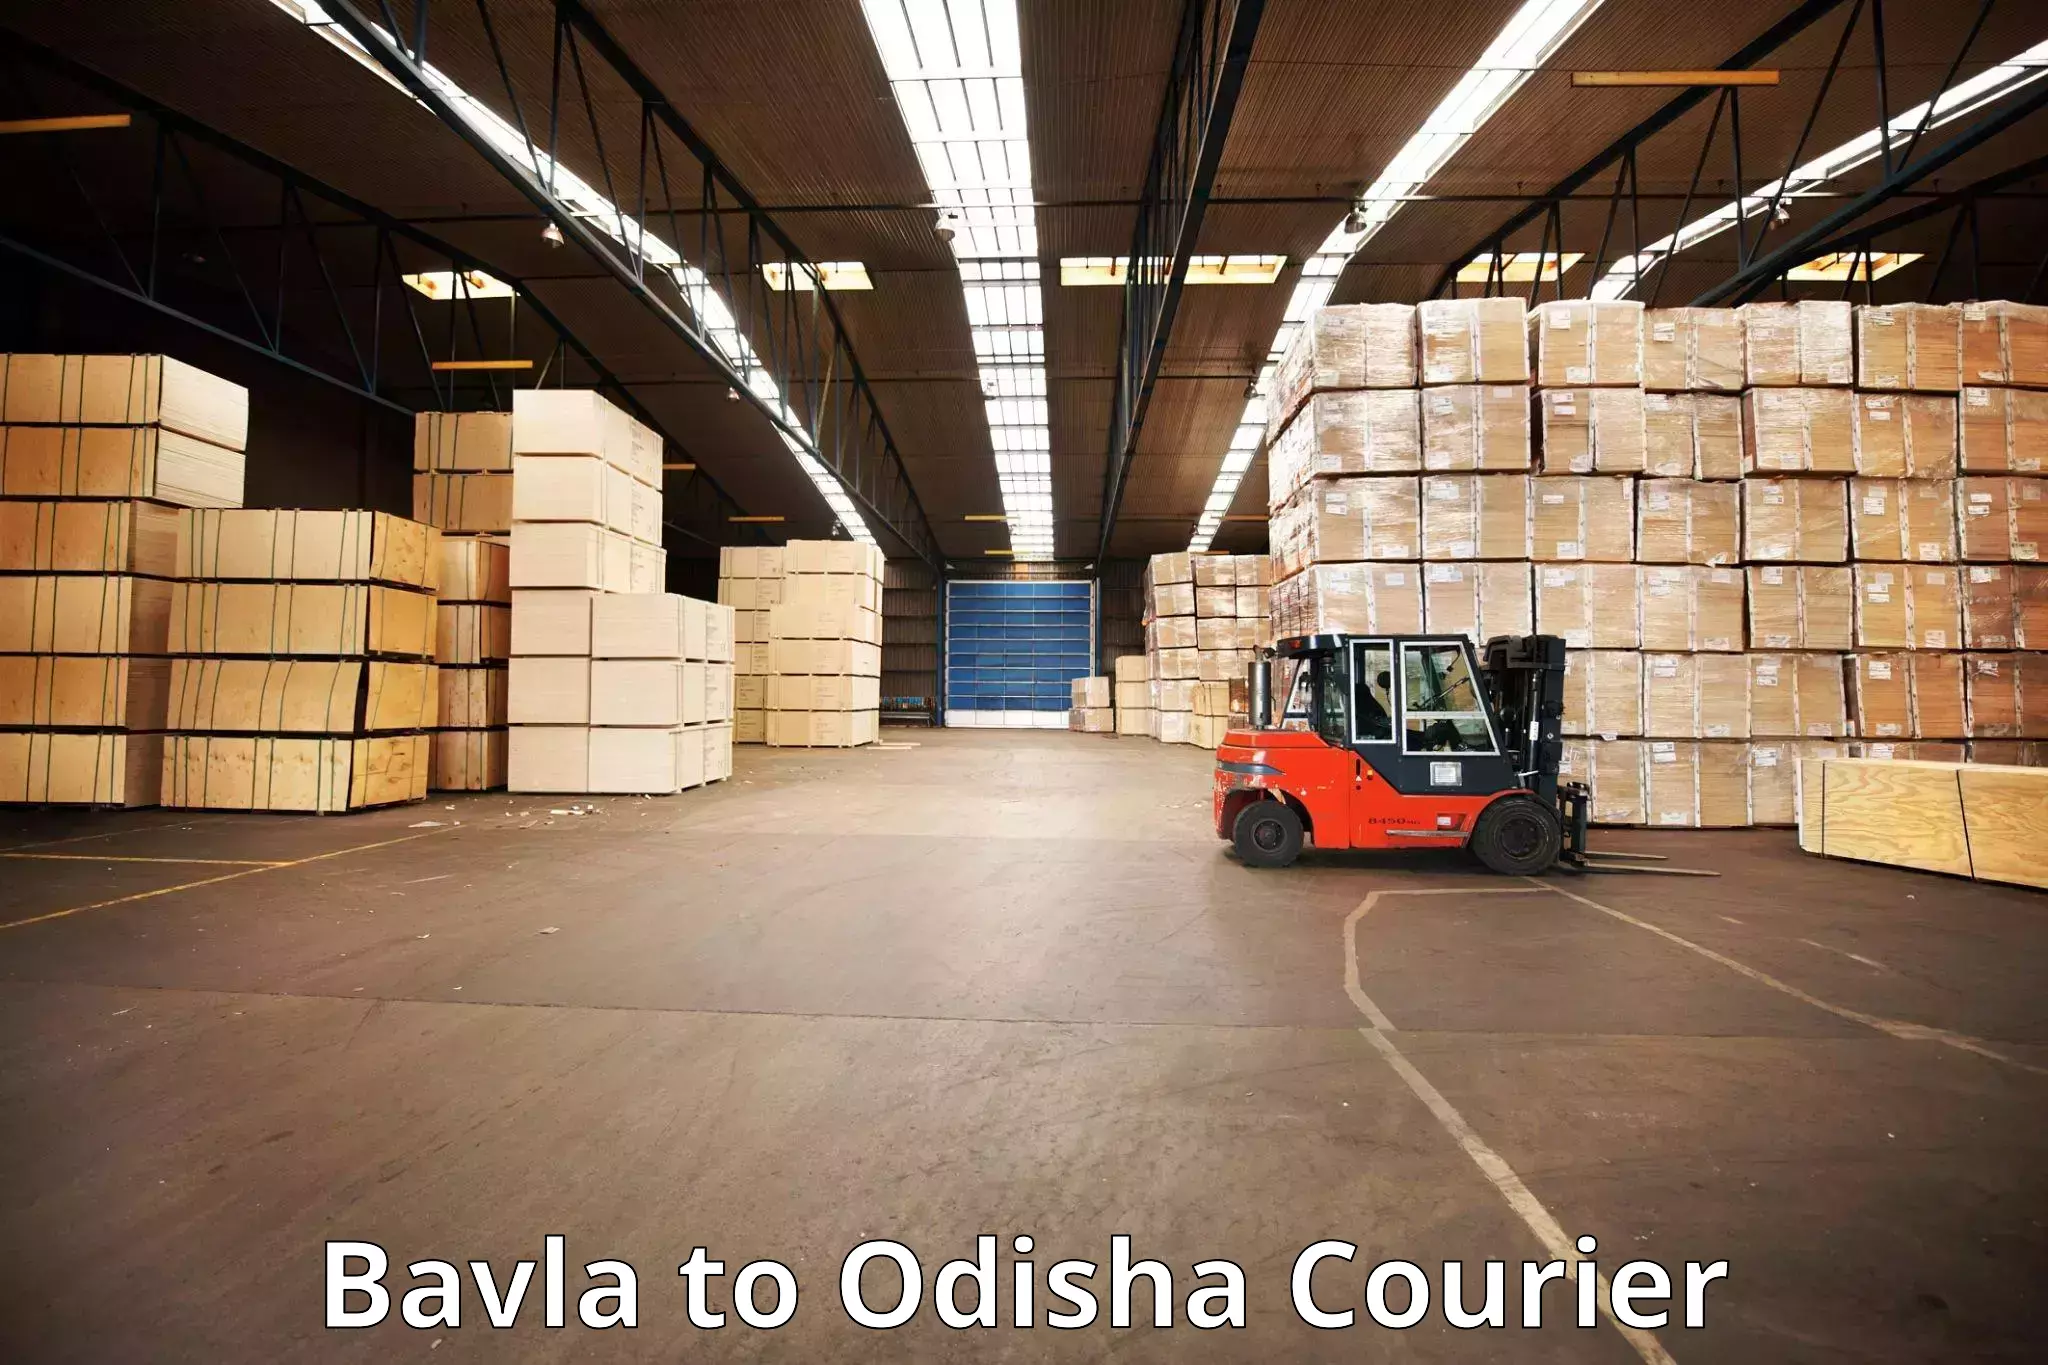 Luggage delivery optimization in Bavla to Nirakarpur